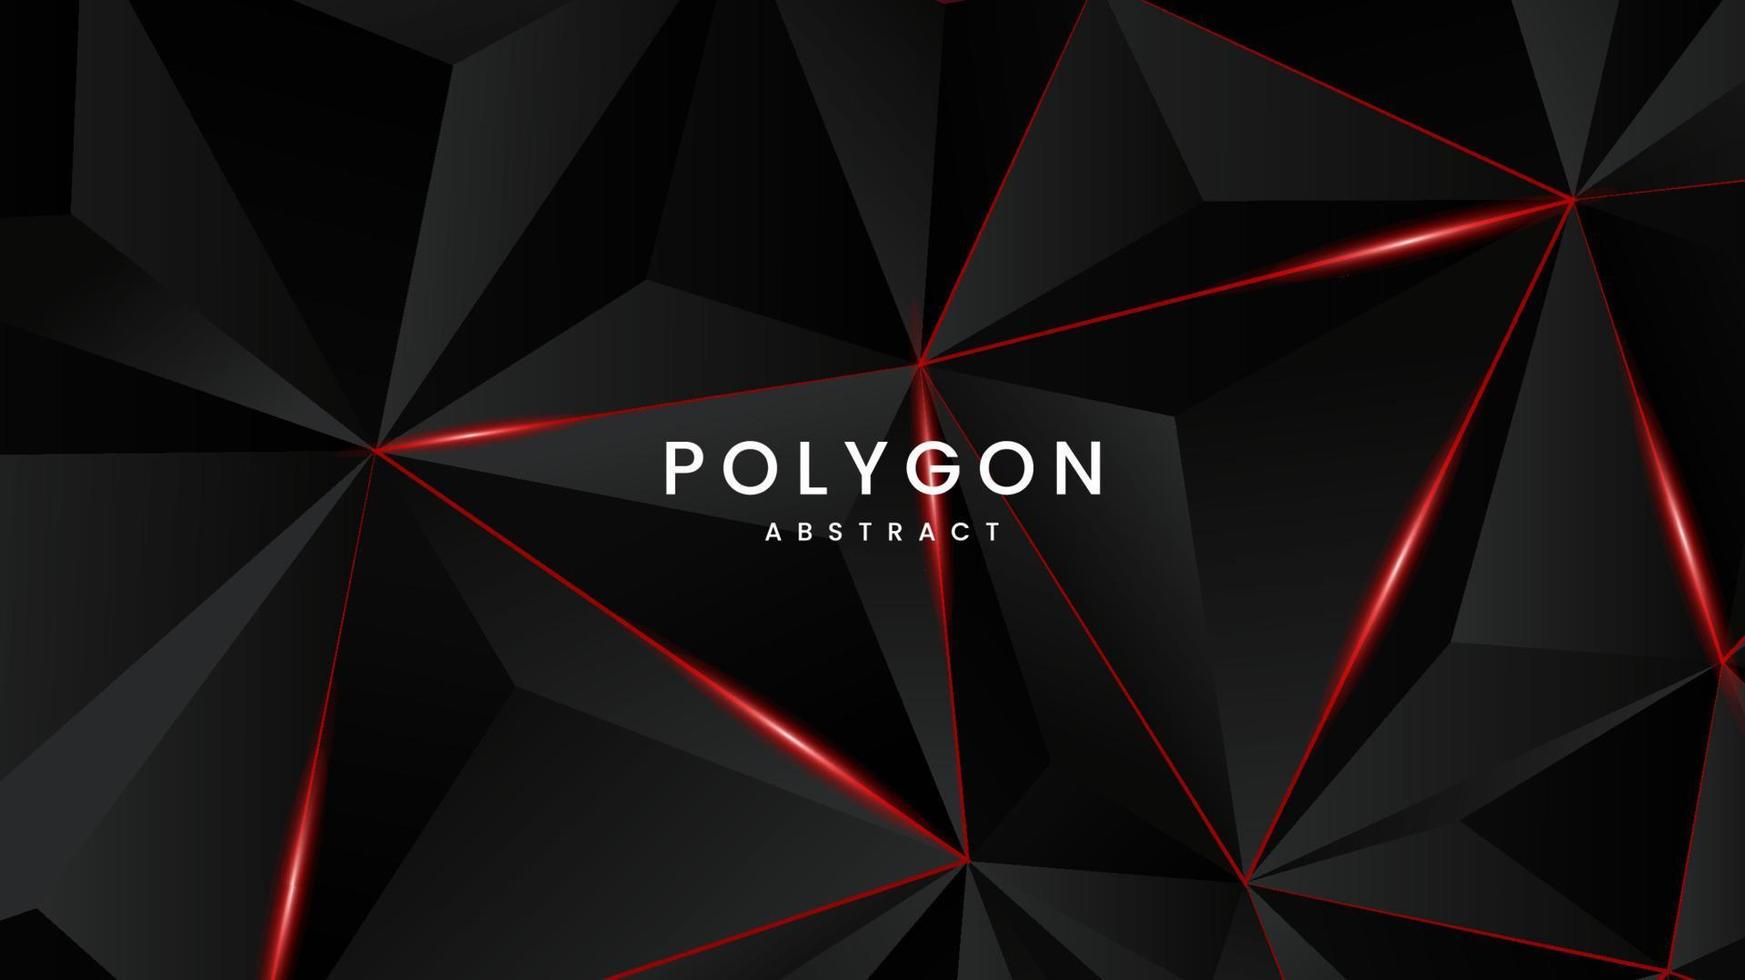 il modello geometrico poligonale astratto del poligono con il disegno, il vettore e l'illustrazione del fondo dei cerchi e del triangolo